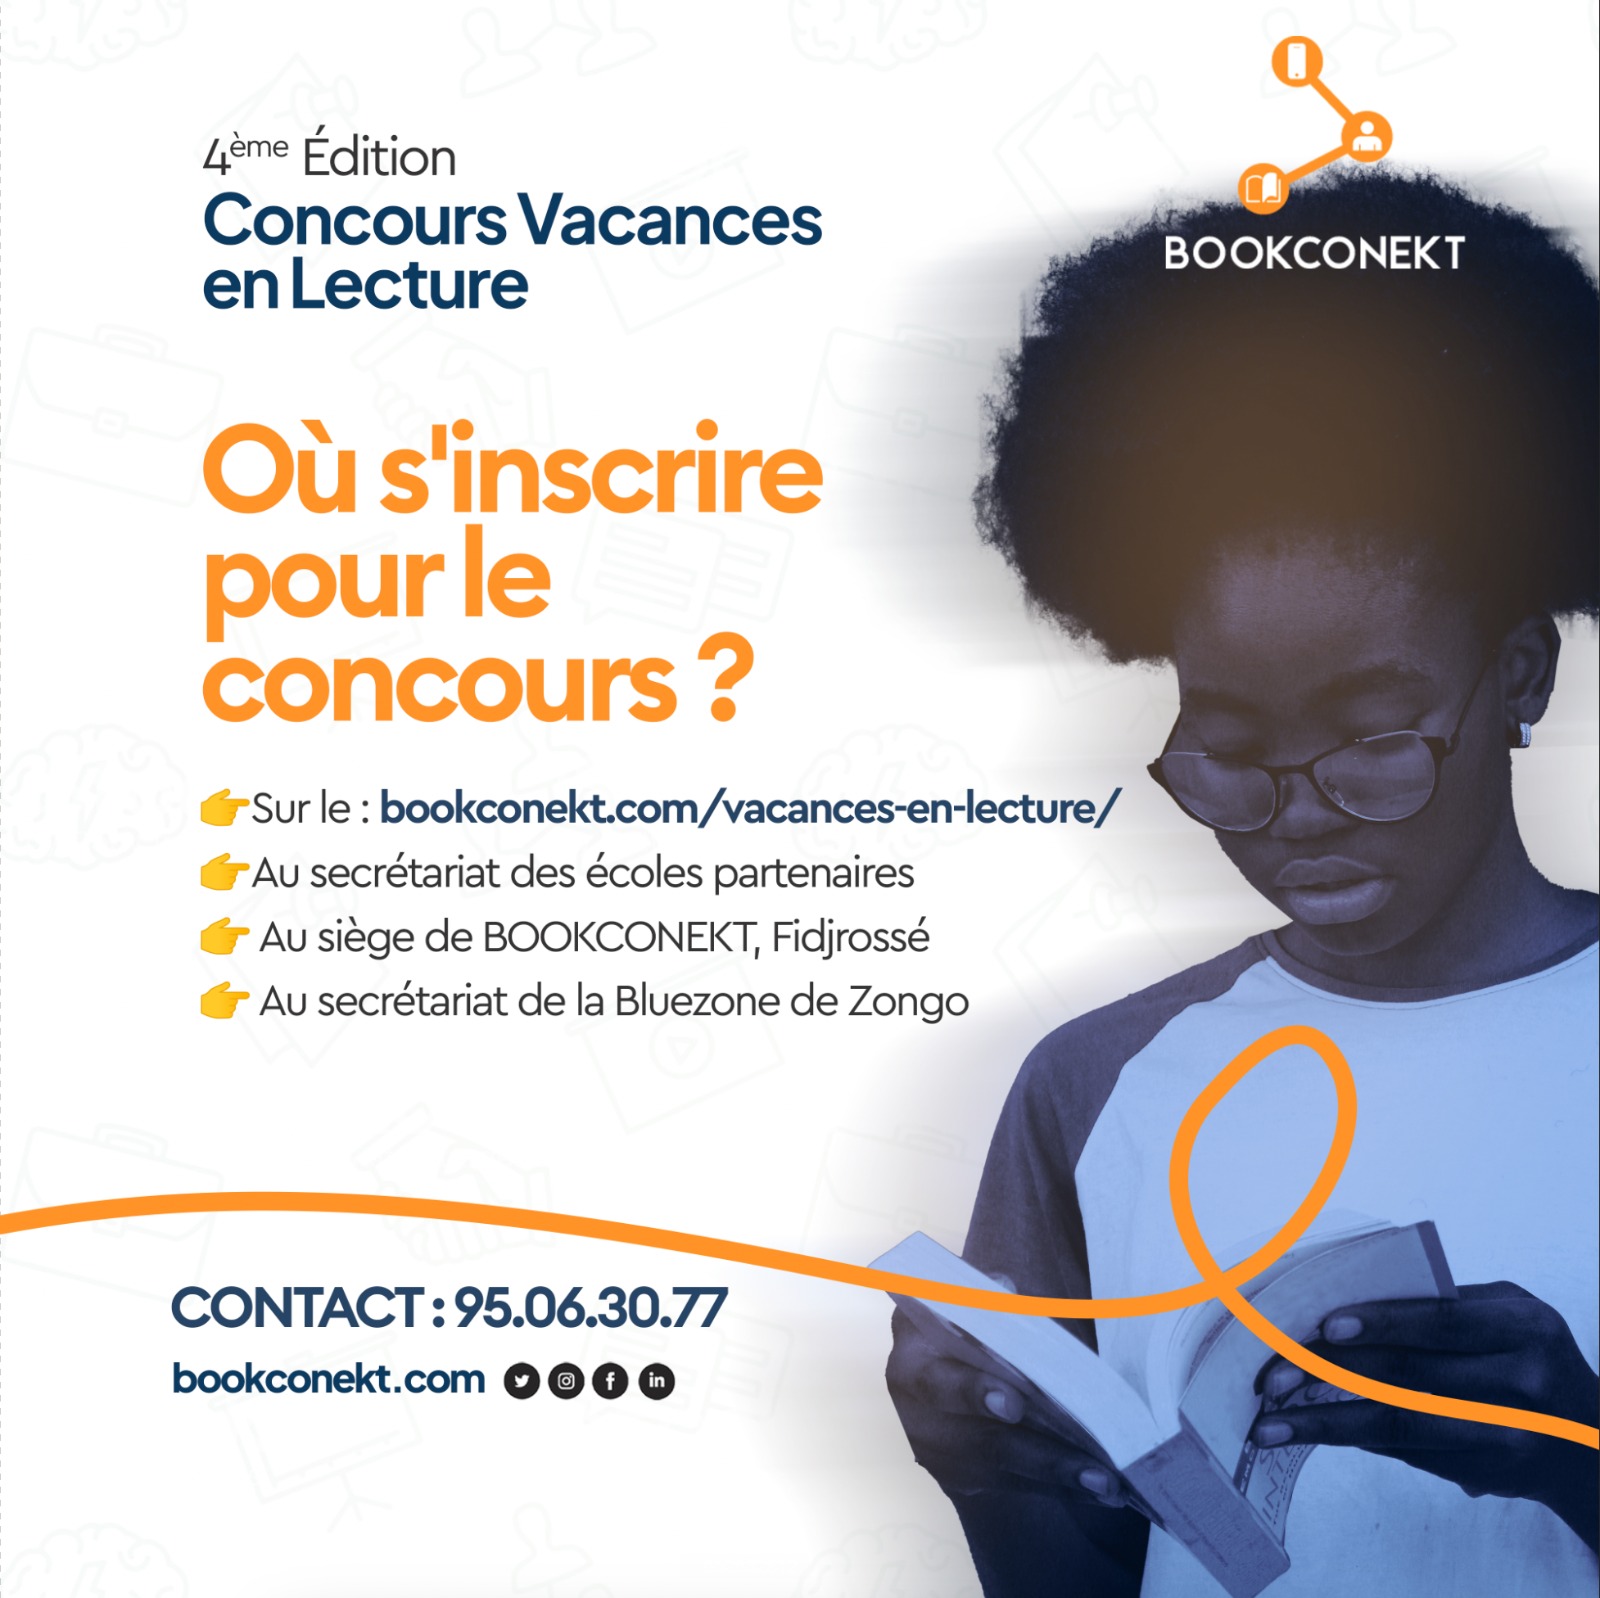 Affiche de lancement de la quatrième édition du Concours "Vacances en lecture".